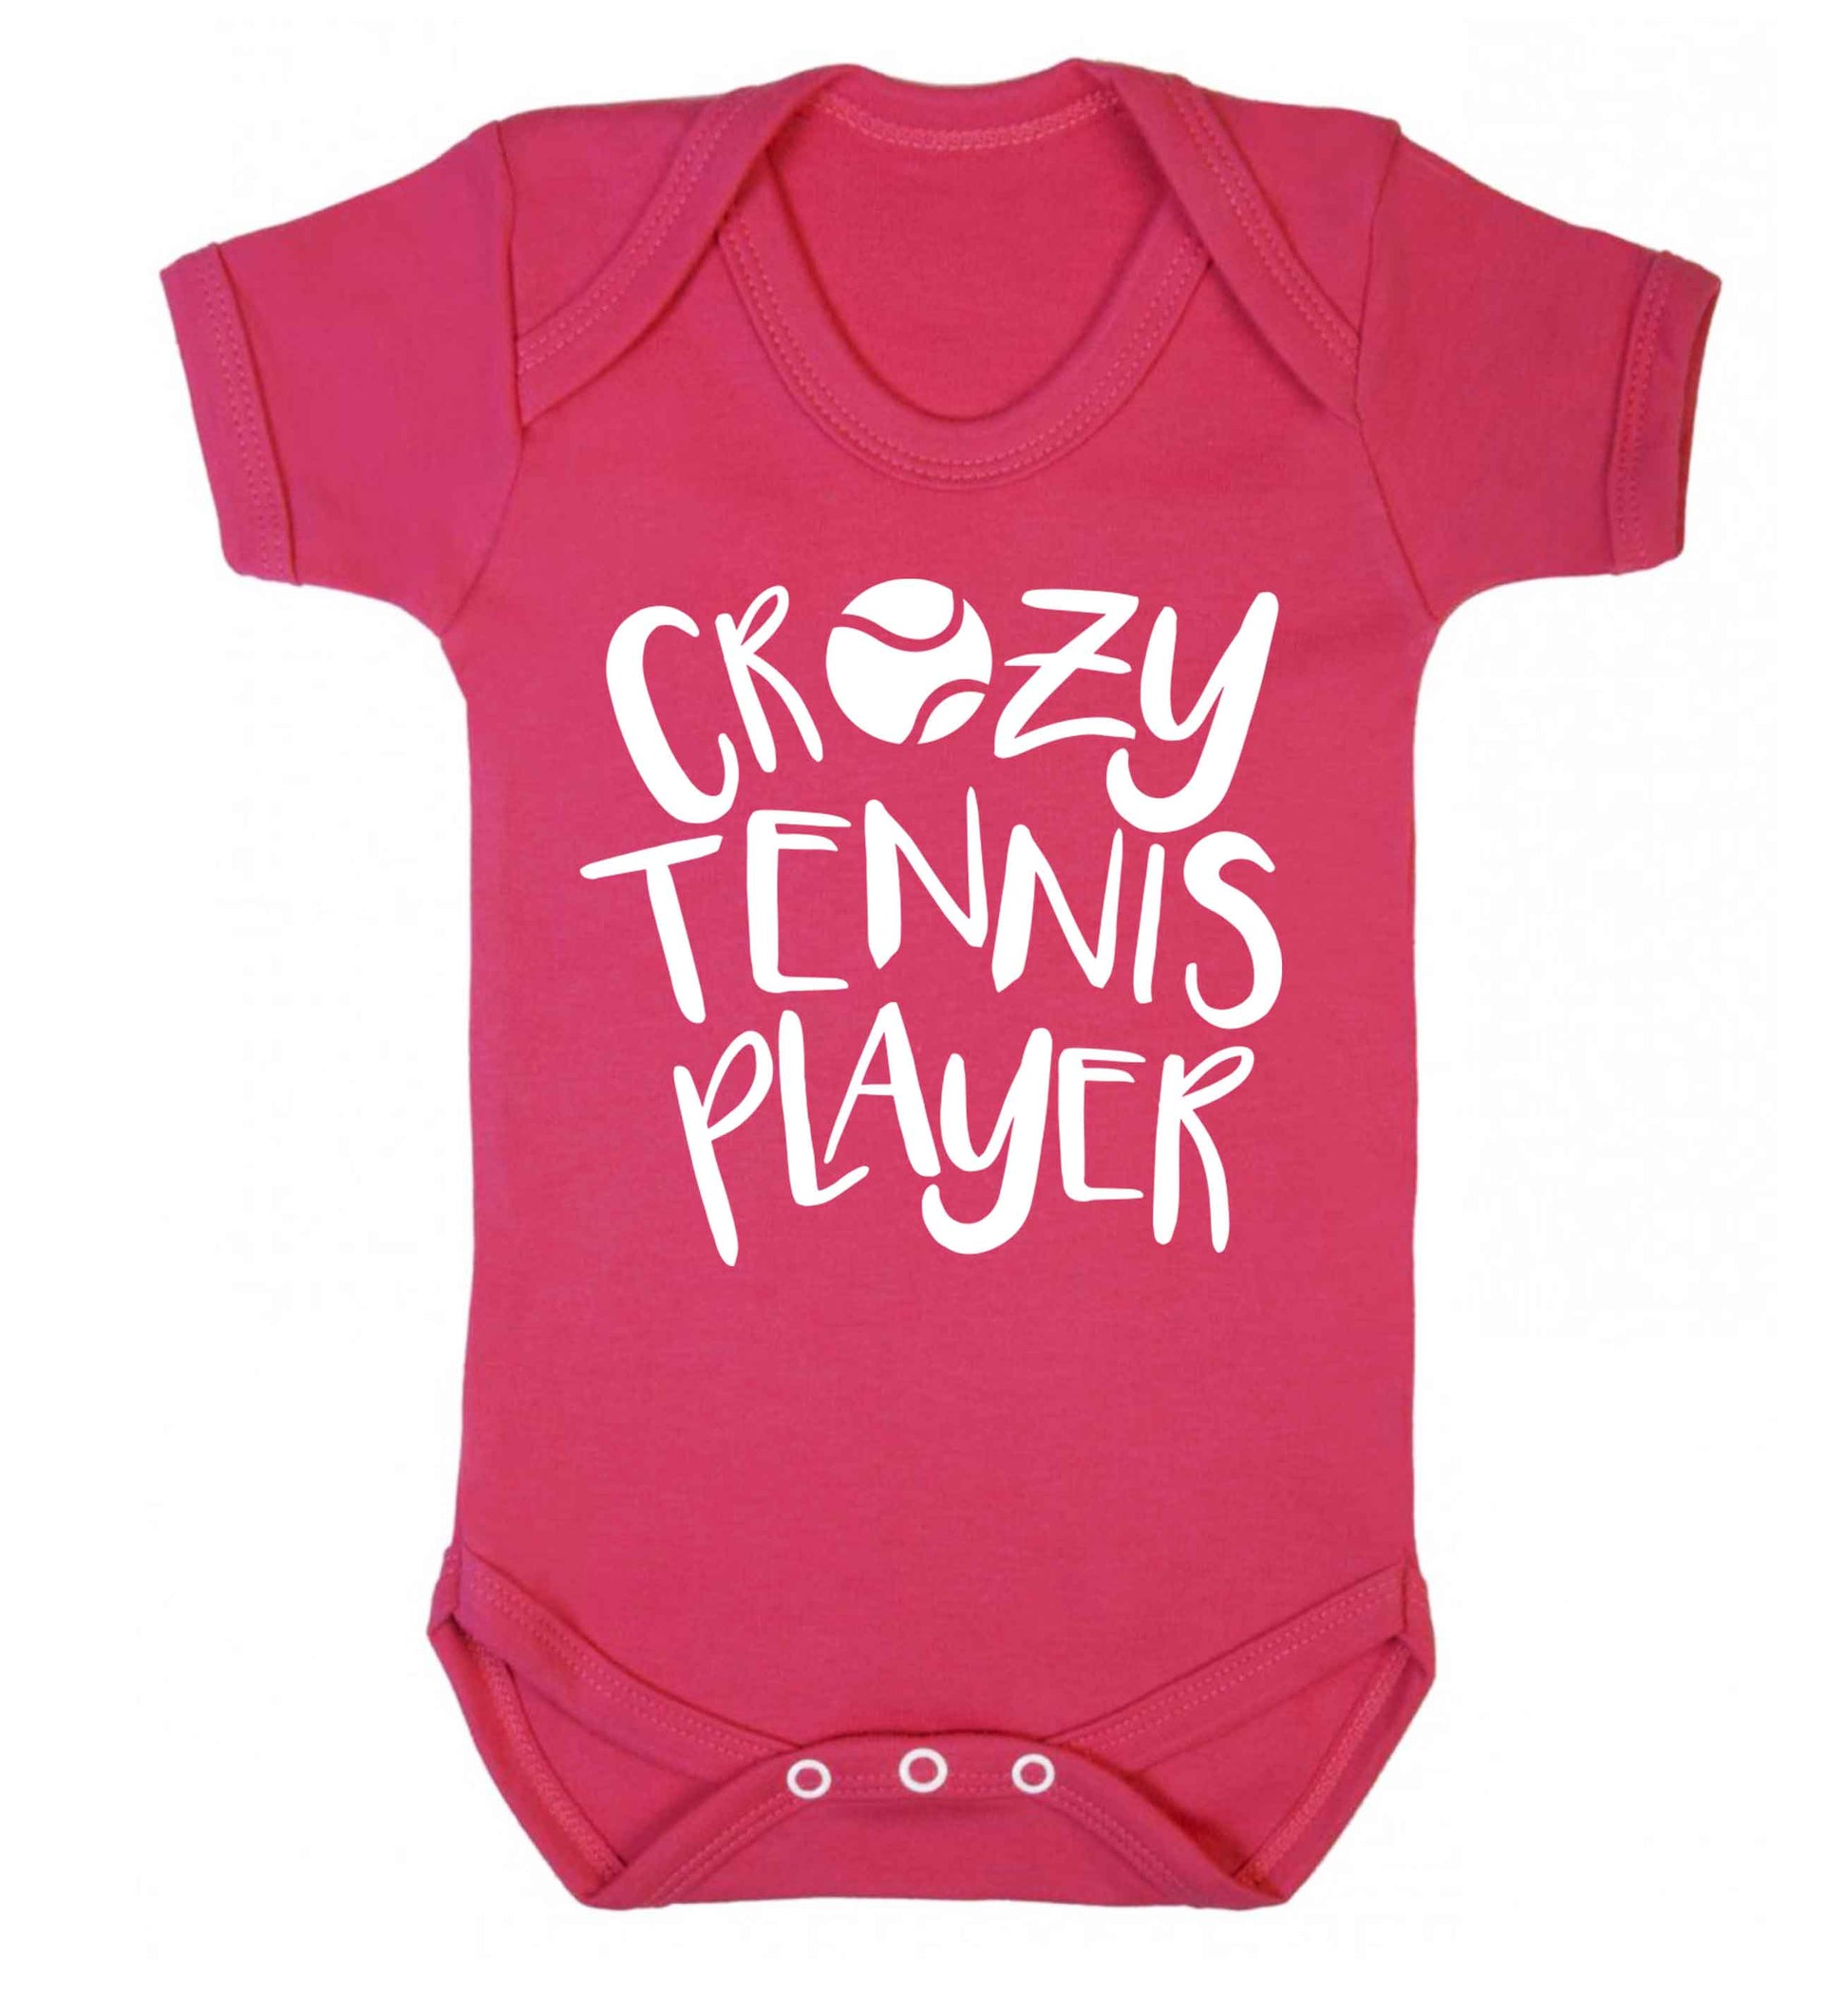 Crazy tennis player Baby Vest dark pink 18-24 months